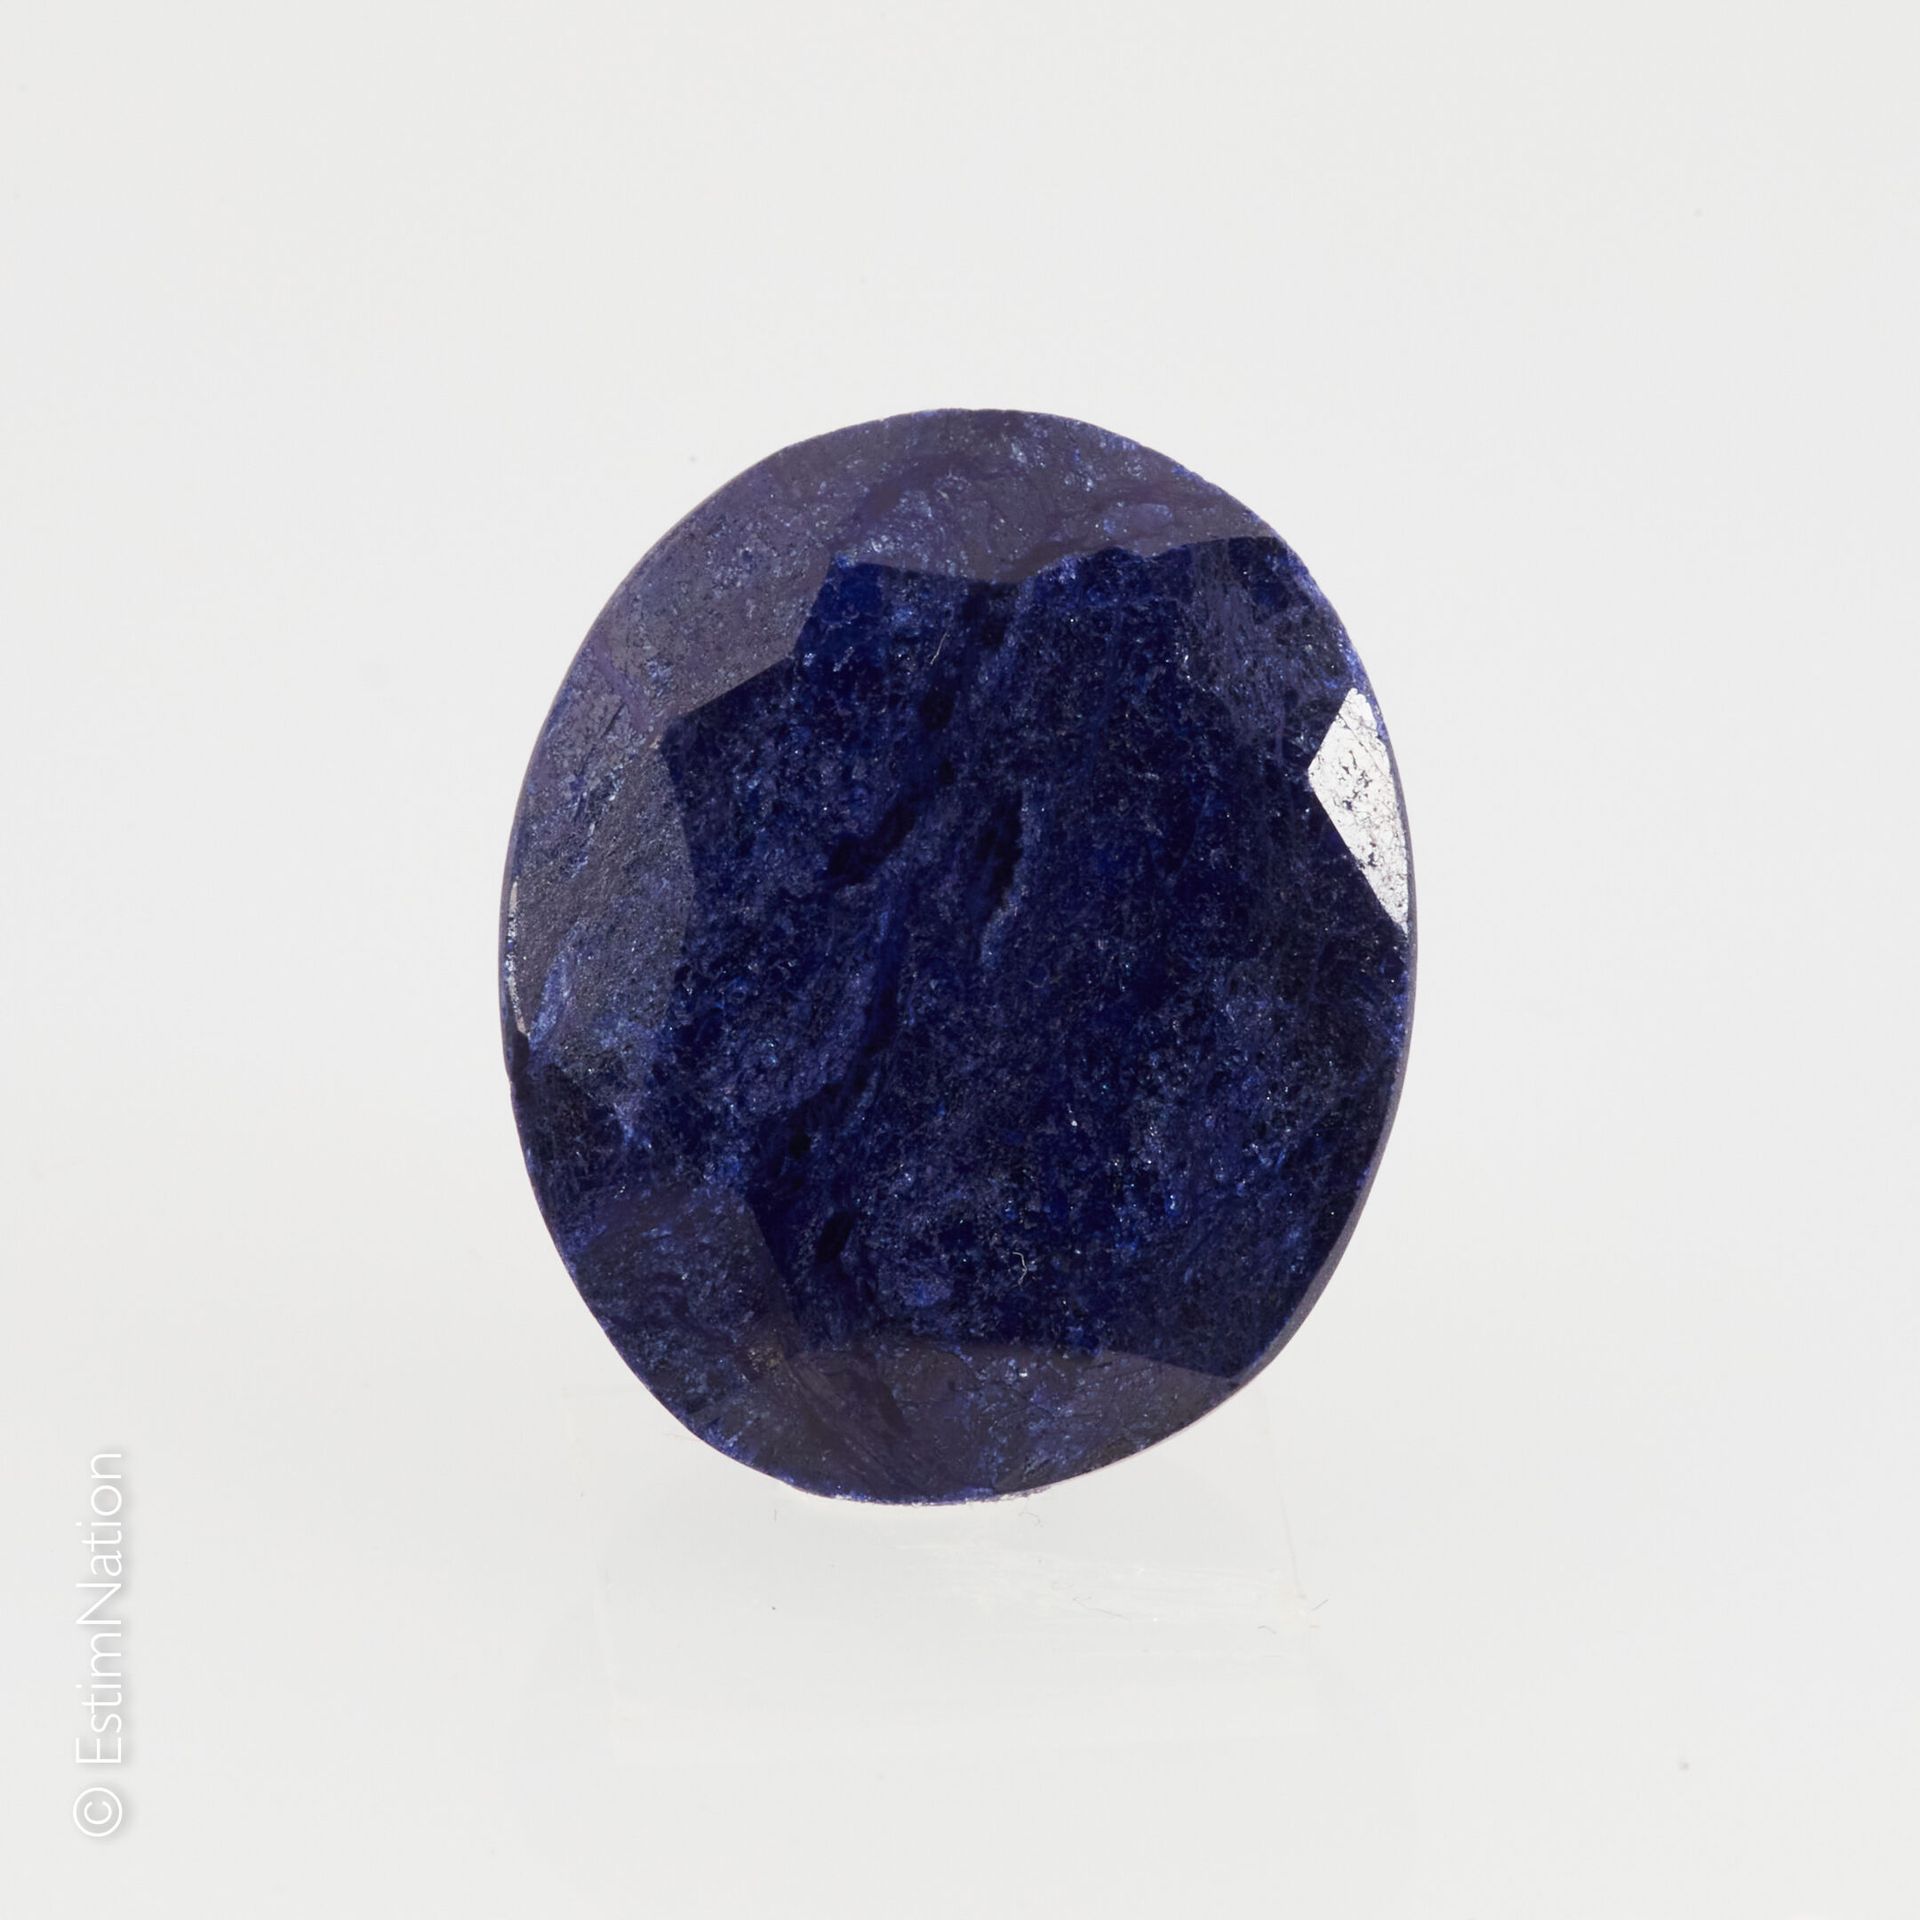 UN SAPHIR SUR PAPIER ET EXAMEN 一颗刻面的椭圆蓝宝石在纸上。尺寸：19.00 x 16.00 x 6.00 mm左右。重量：约18&hellip;